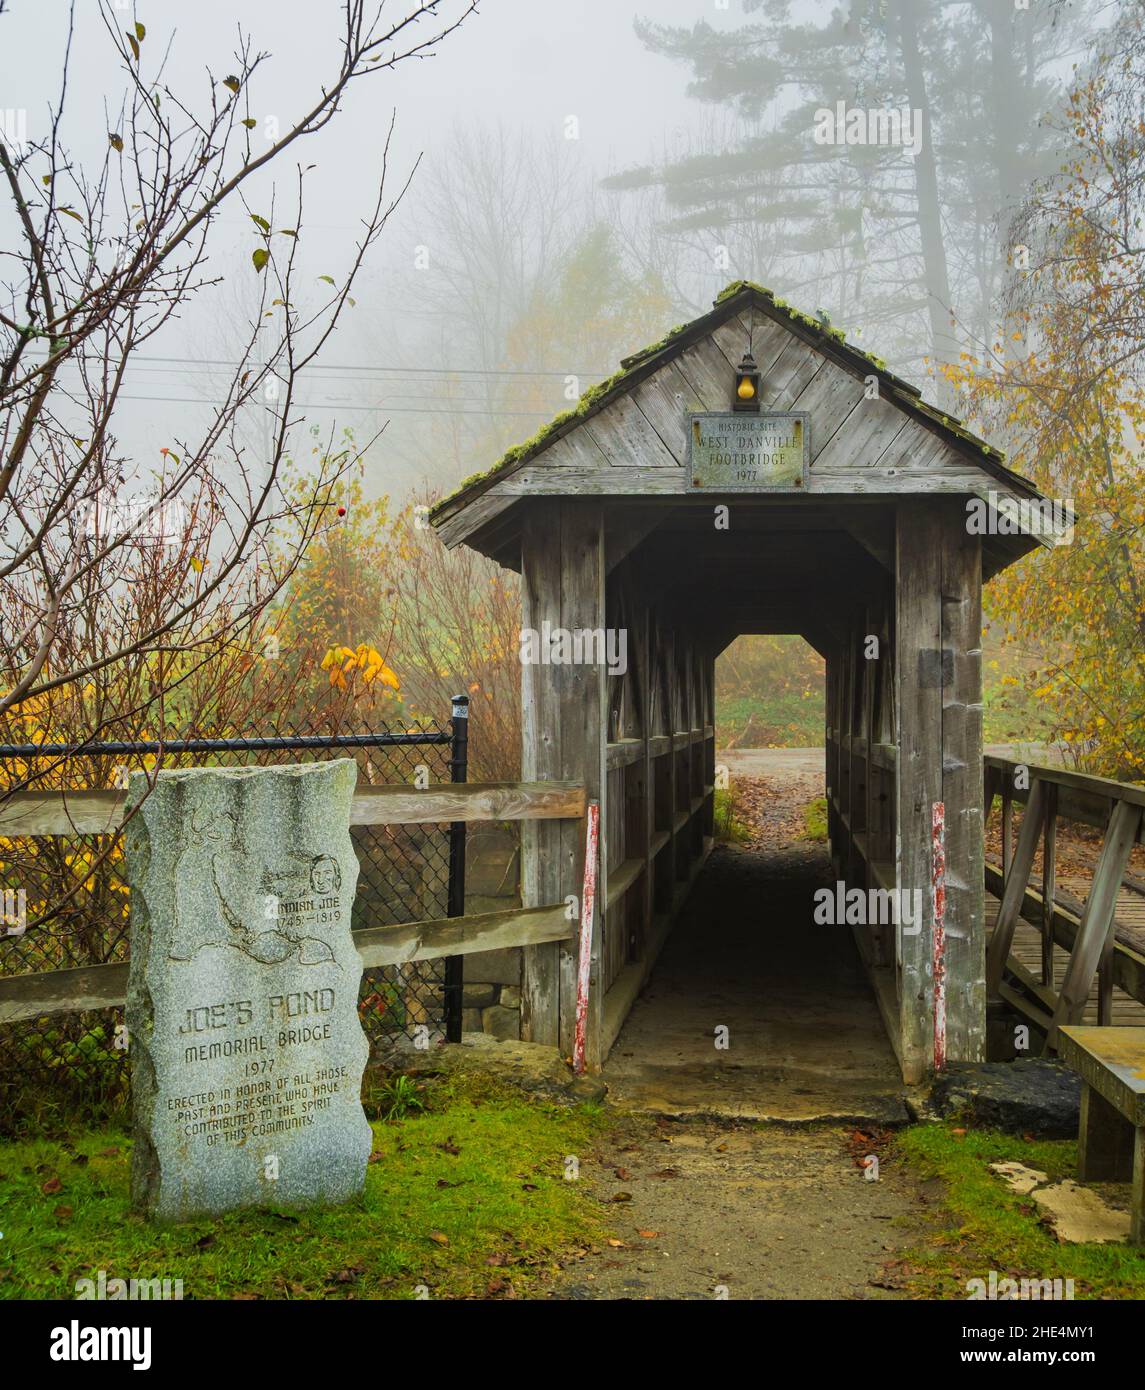 Joe's Pond Memorial Bridge avec la passerelle West Danville, un pont couvert piétonnier historique dans le Vermont Banque D'Images